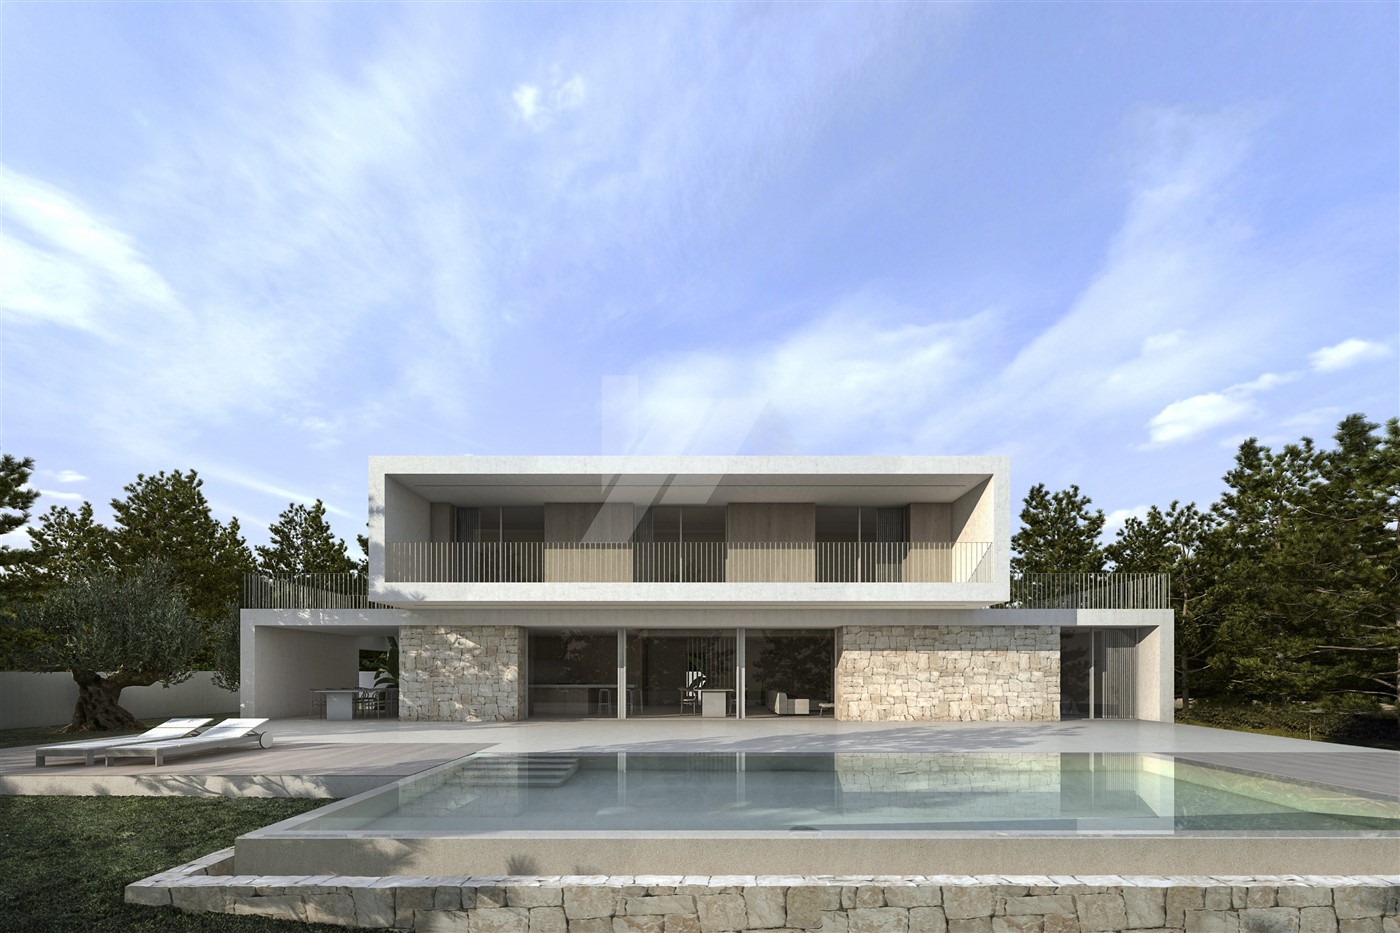 New build villa for sale in Calpe, Costa Blanca.